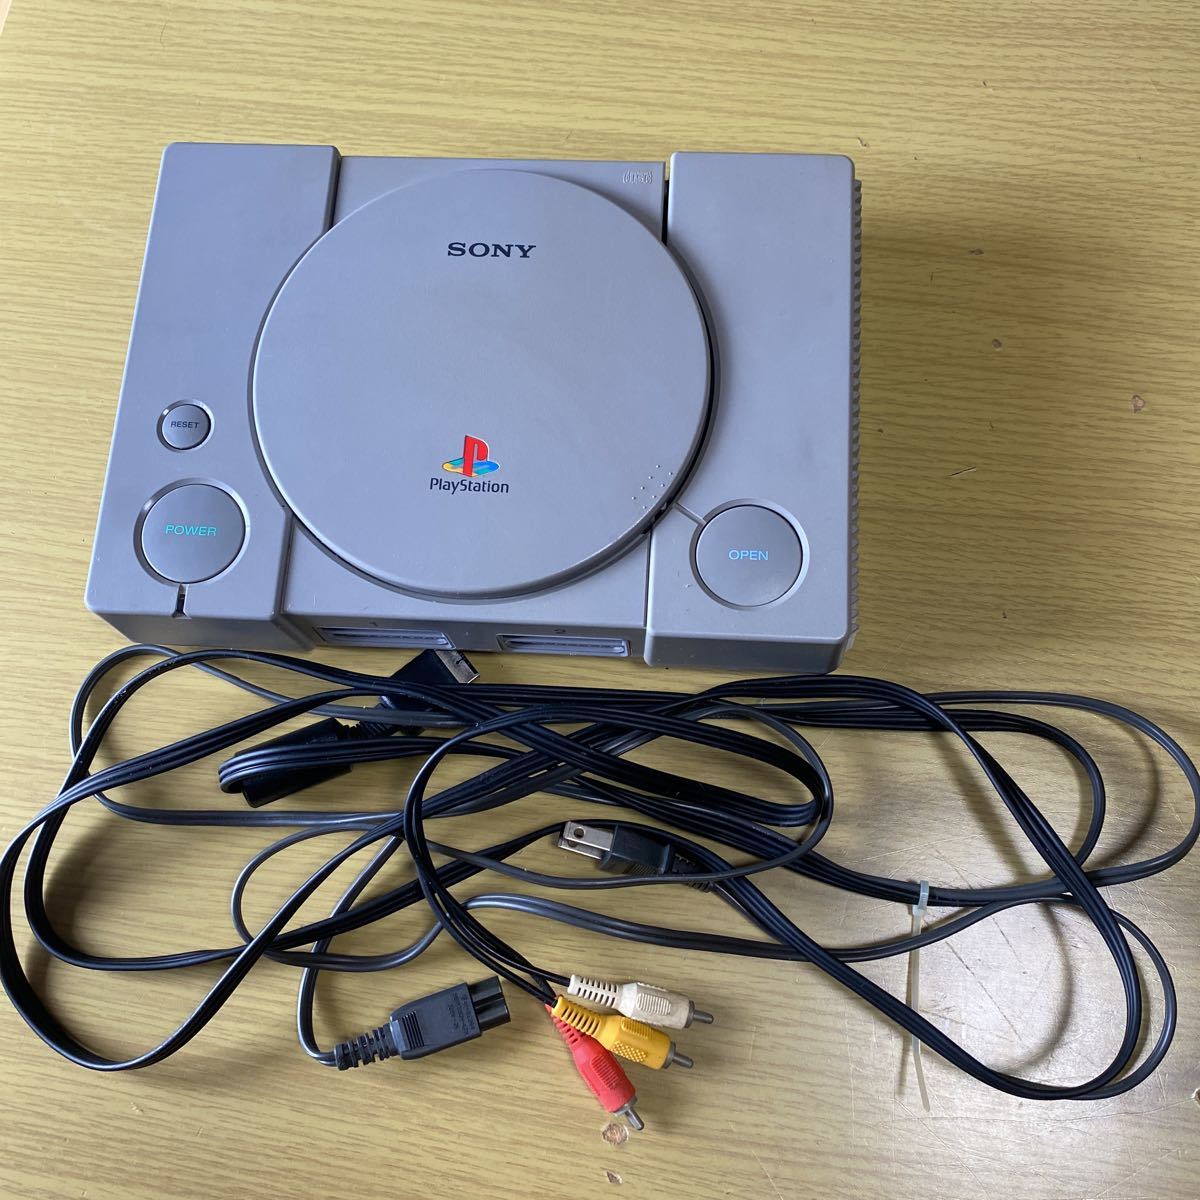  PlayStation PS1